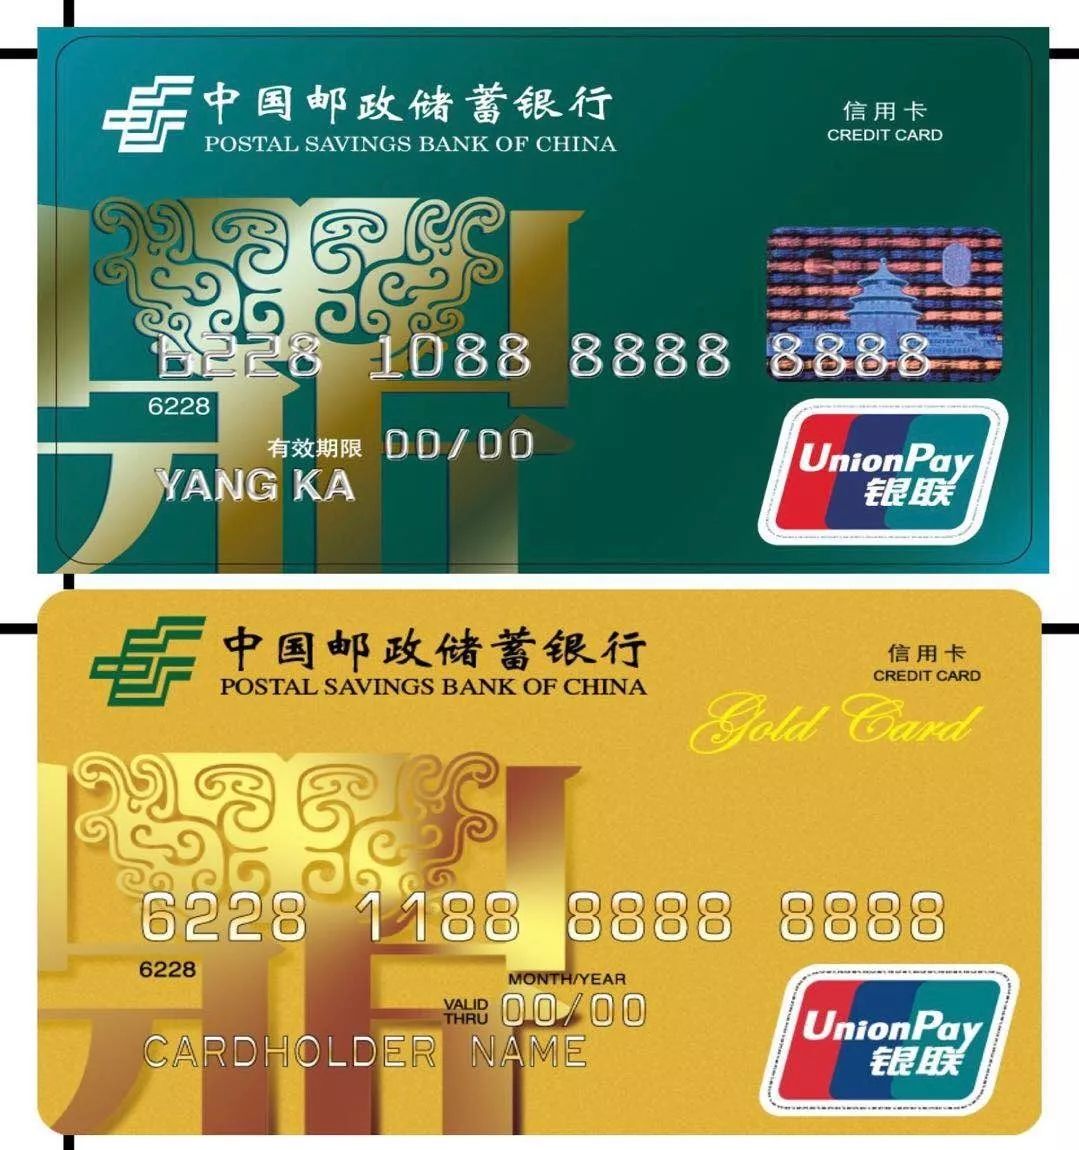 【金色港湾】中国邮政储蓄银行信用卡在